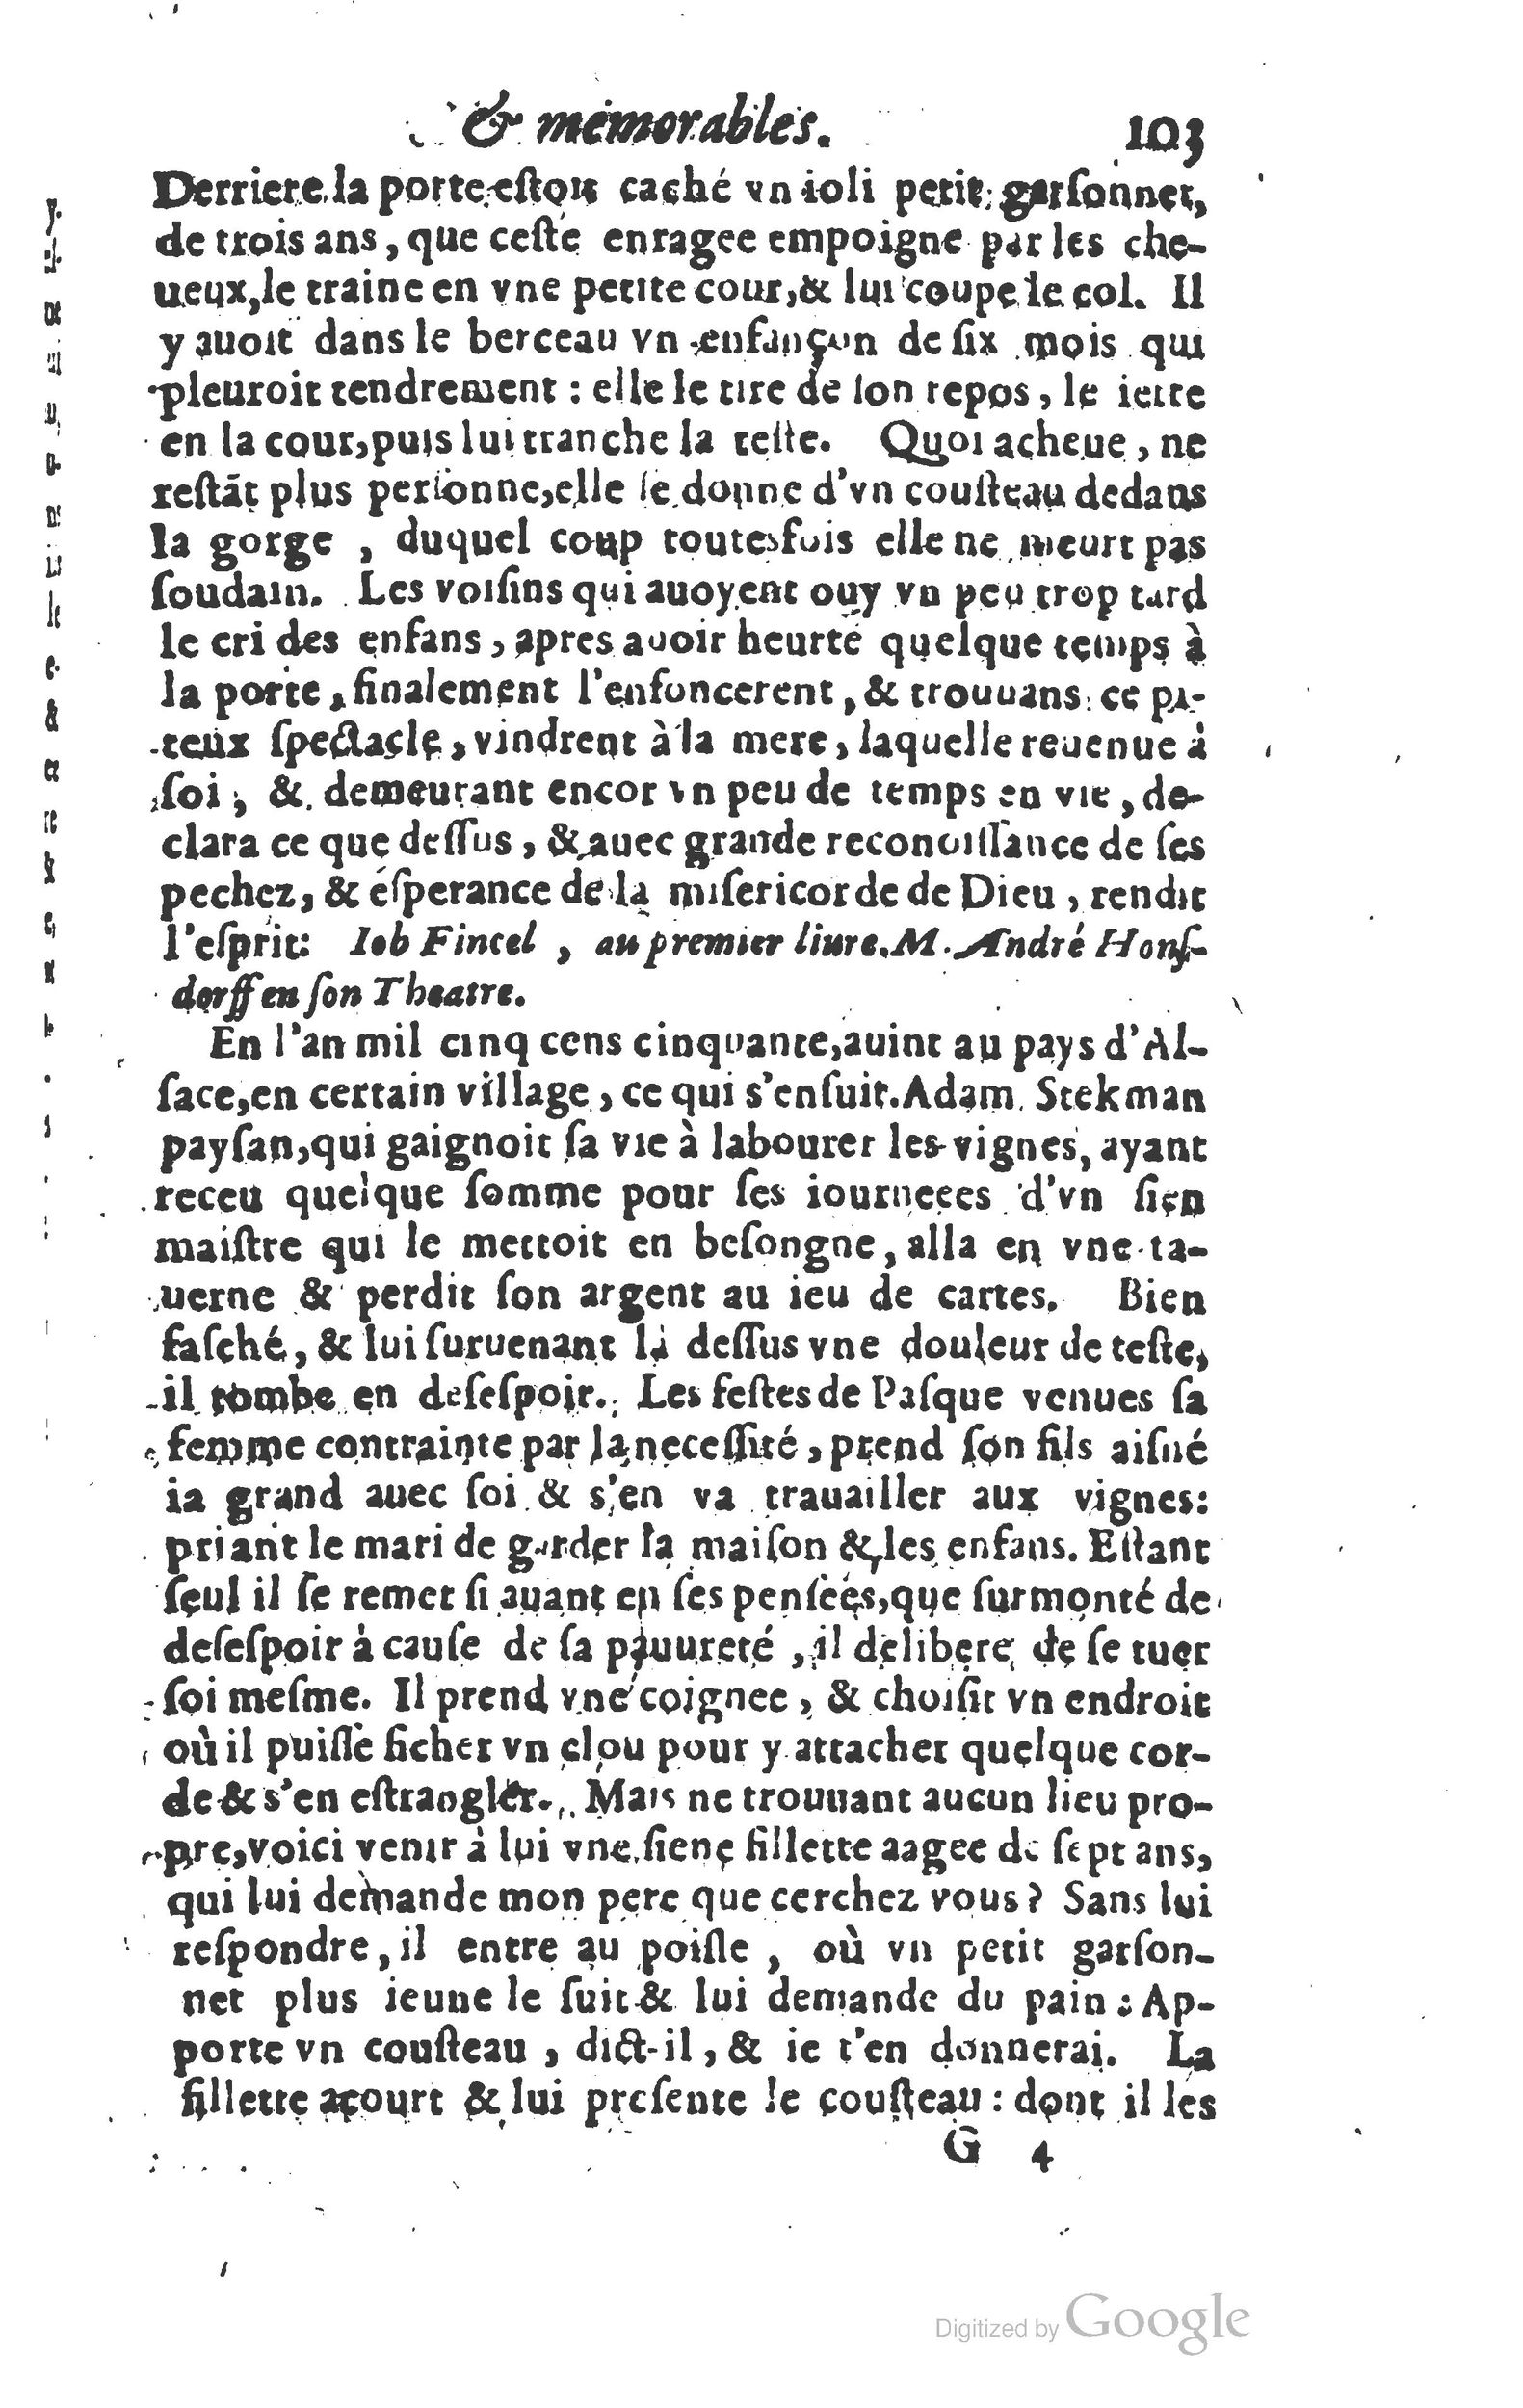 1610 Trésor d’histoires admirables et mémorables de nostre temps Marceau Princeton_Page_0124.jpg